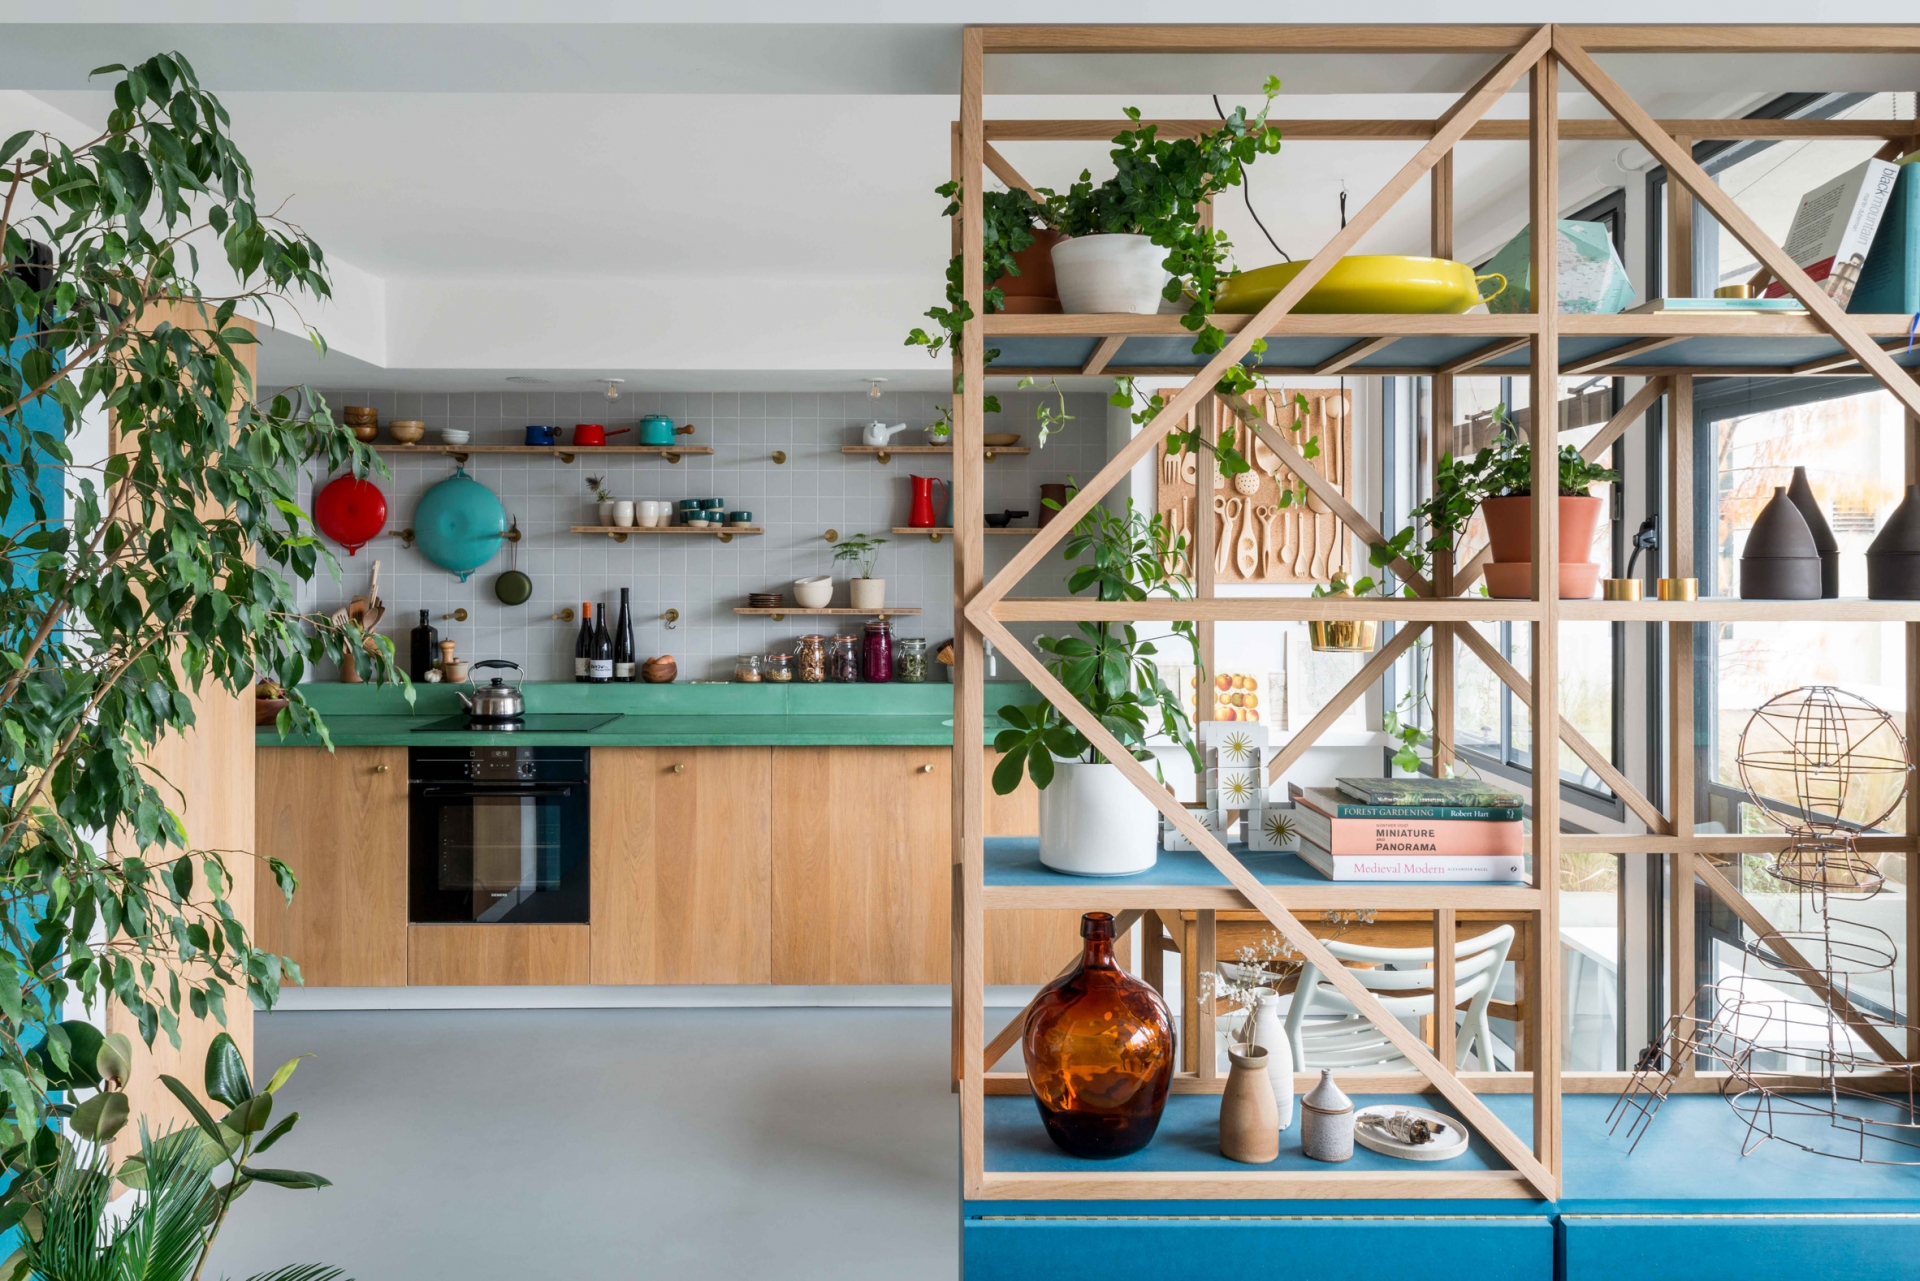 Tầng dưới của căn hộ là không gian dành cho phòng bếp và khu vực tiếp khách. Bếp được thiết kế kiểu chữ I với tủ gỗ sồi mà mặt bàn bê tông sơn màu xanh ngọc lục bảo. 